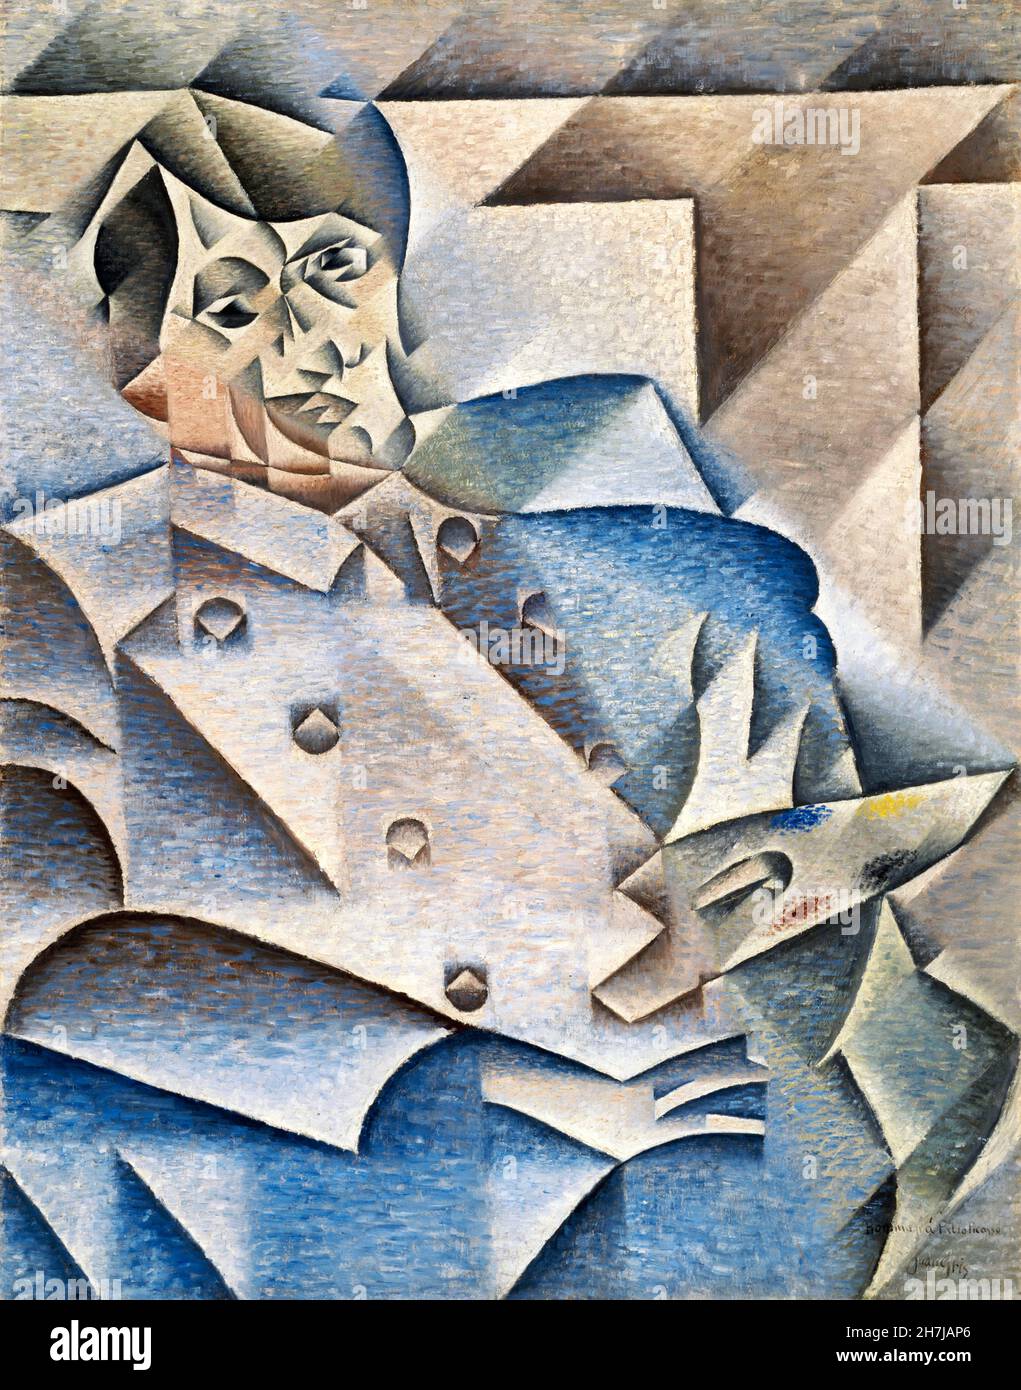 Juan gris.Portrait de Pablo Picasso par José Victoriano (Carmelo Carlos) González-Pérez (1887-1927), huile sur toile, 1912 Banque D'Images